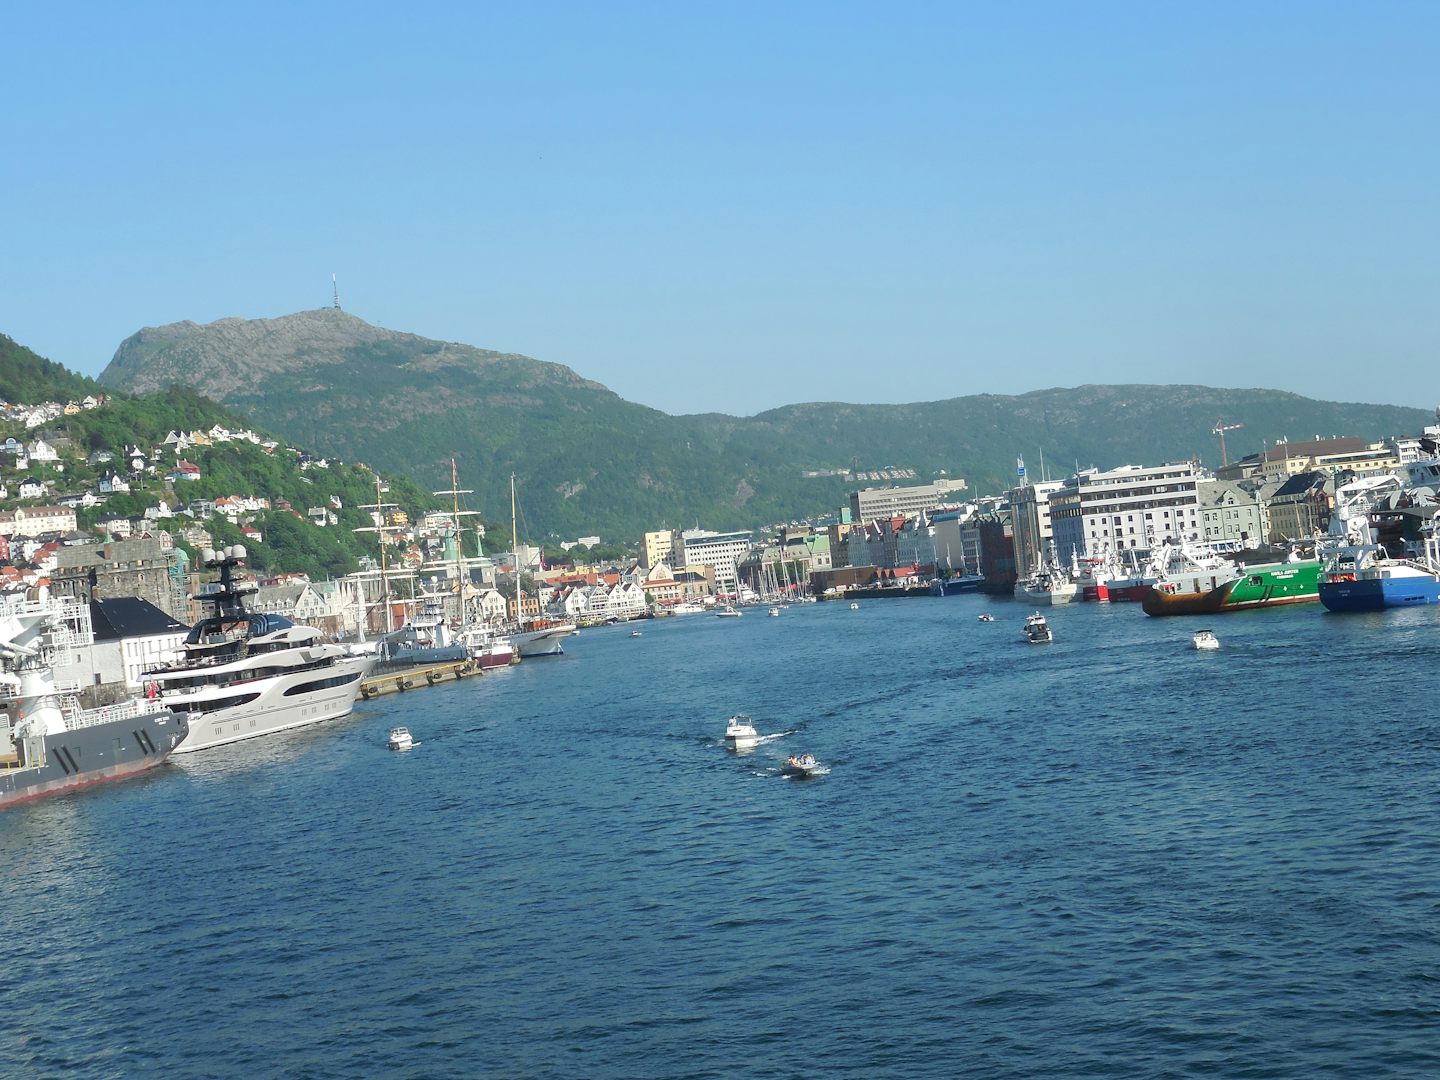 The Port of Bergen.